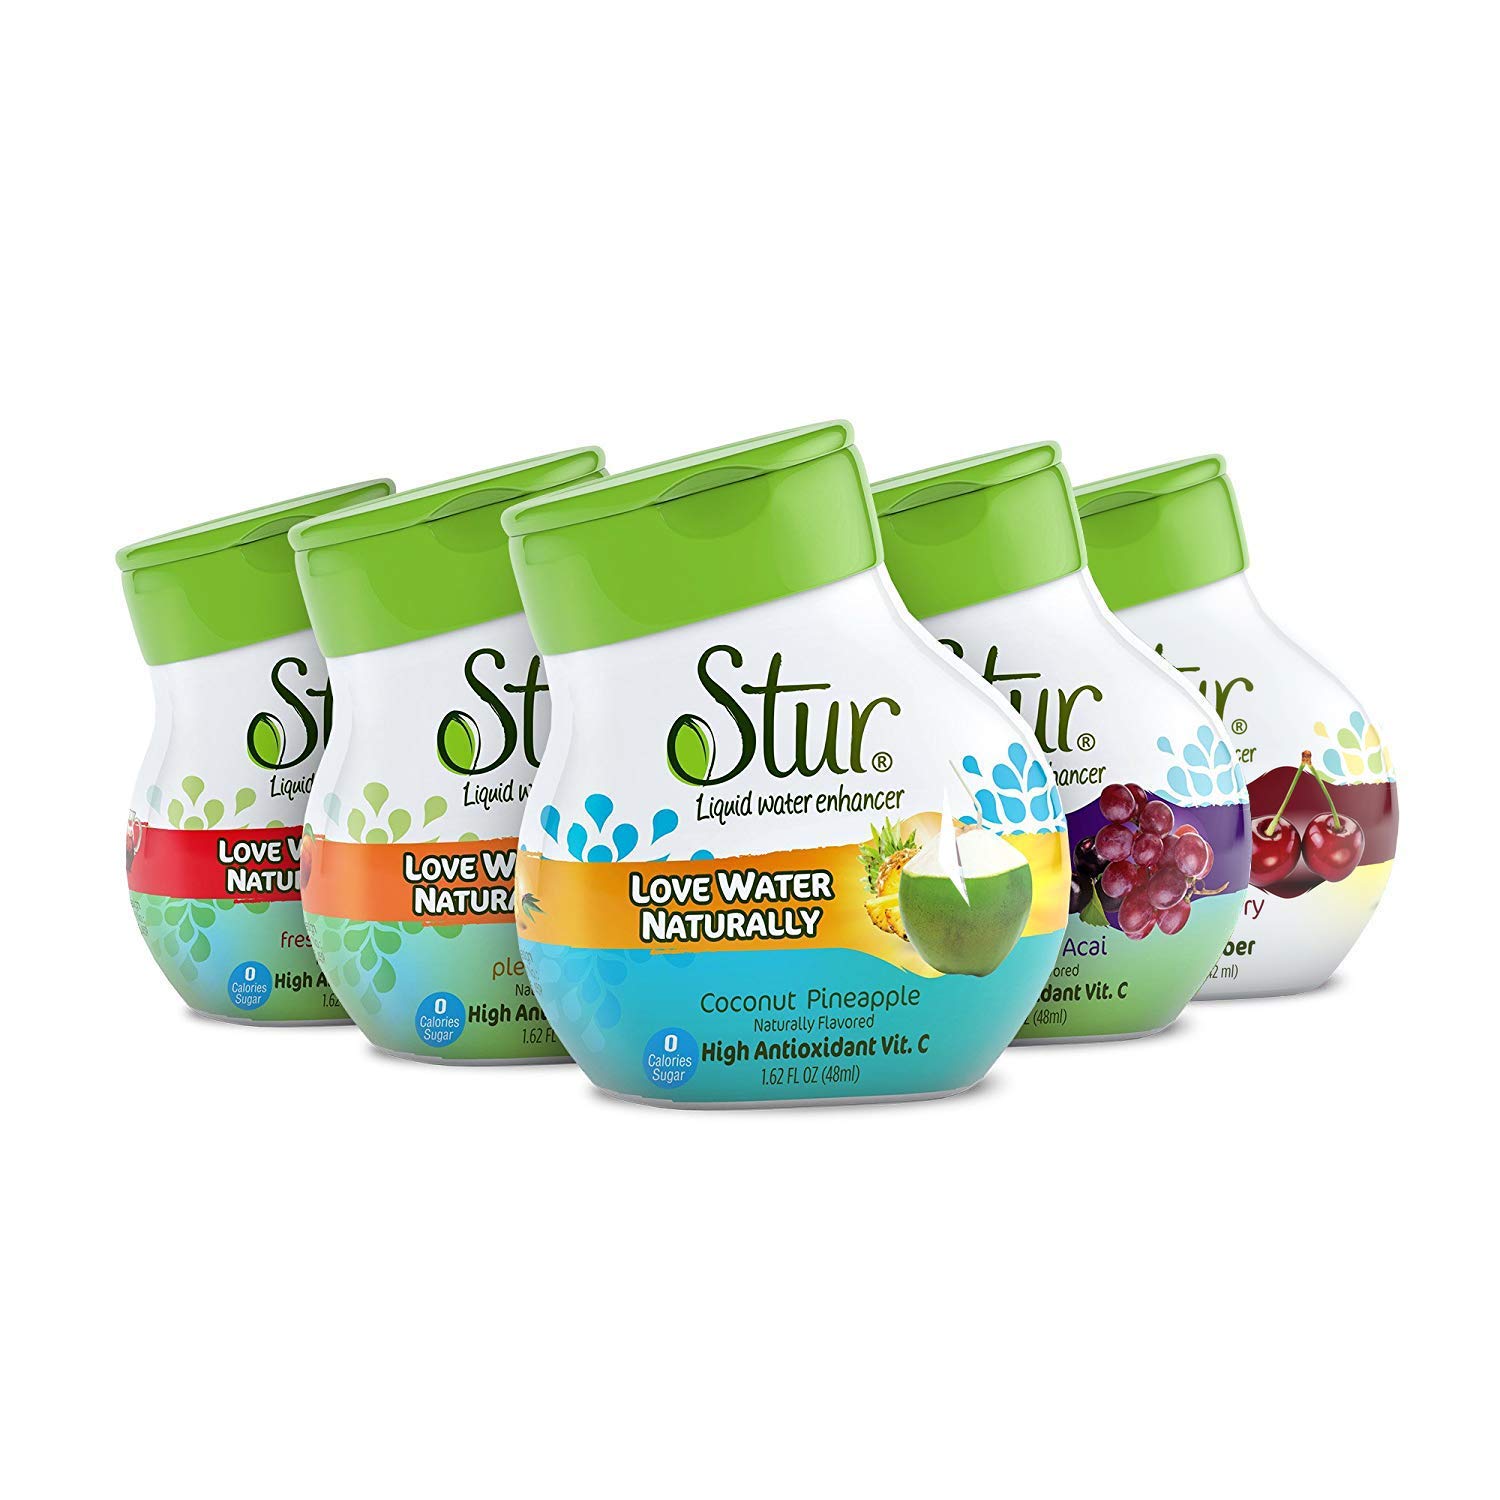 Stur Summer Variety Drink Mix/Water Enhancer, 5-Pack